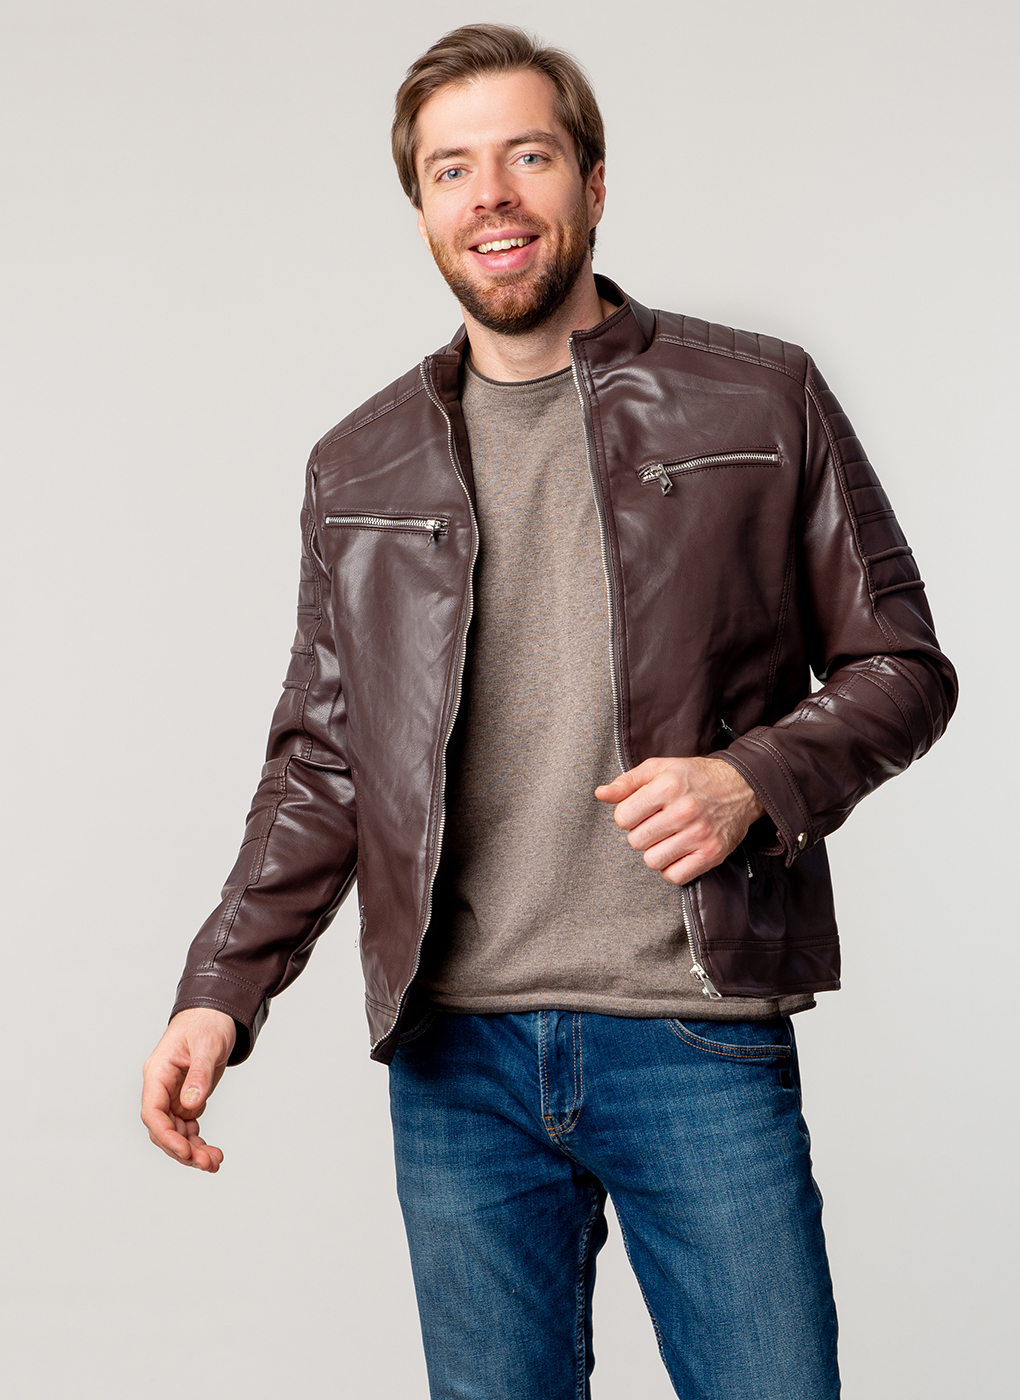 Кожаная куртка мужская Каляев 63858 коричневая 52 RU - купить в Москве, цены на Мегамаркет